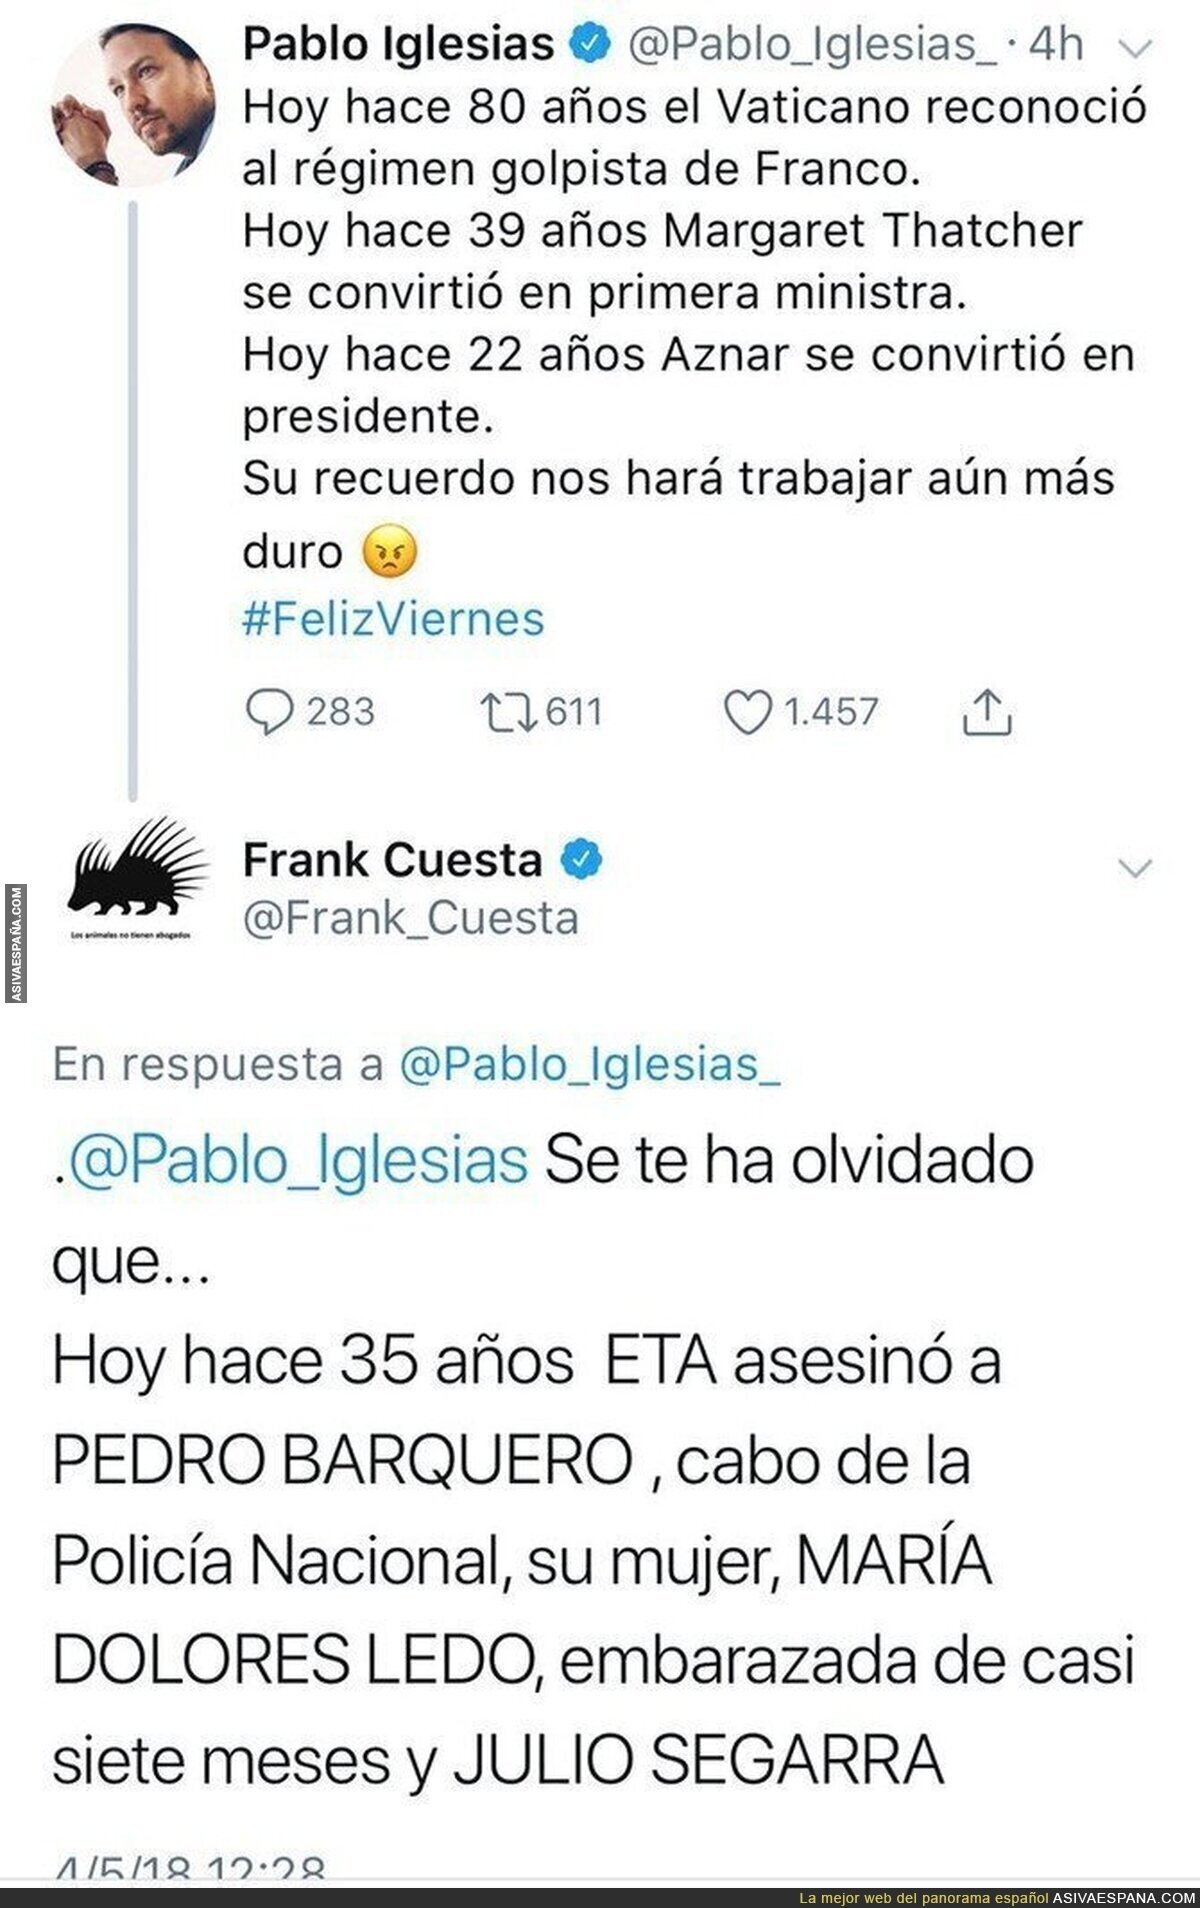 Pablo Iglesias recuerda varios acontecimientos mundiales y Frank Cuesta le recuerda algo que muchos están aplaudiendo